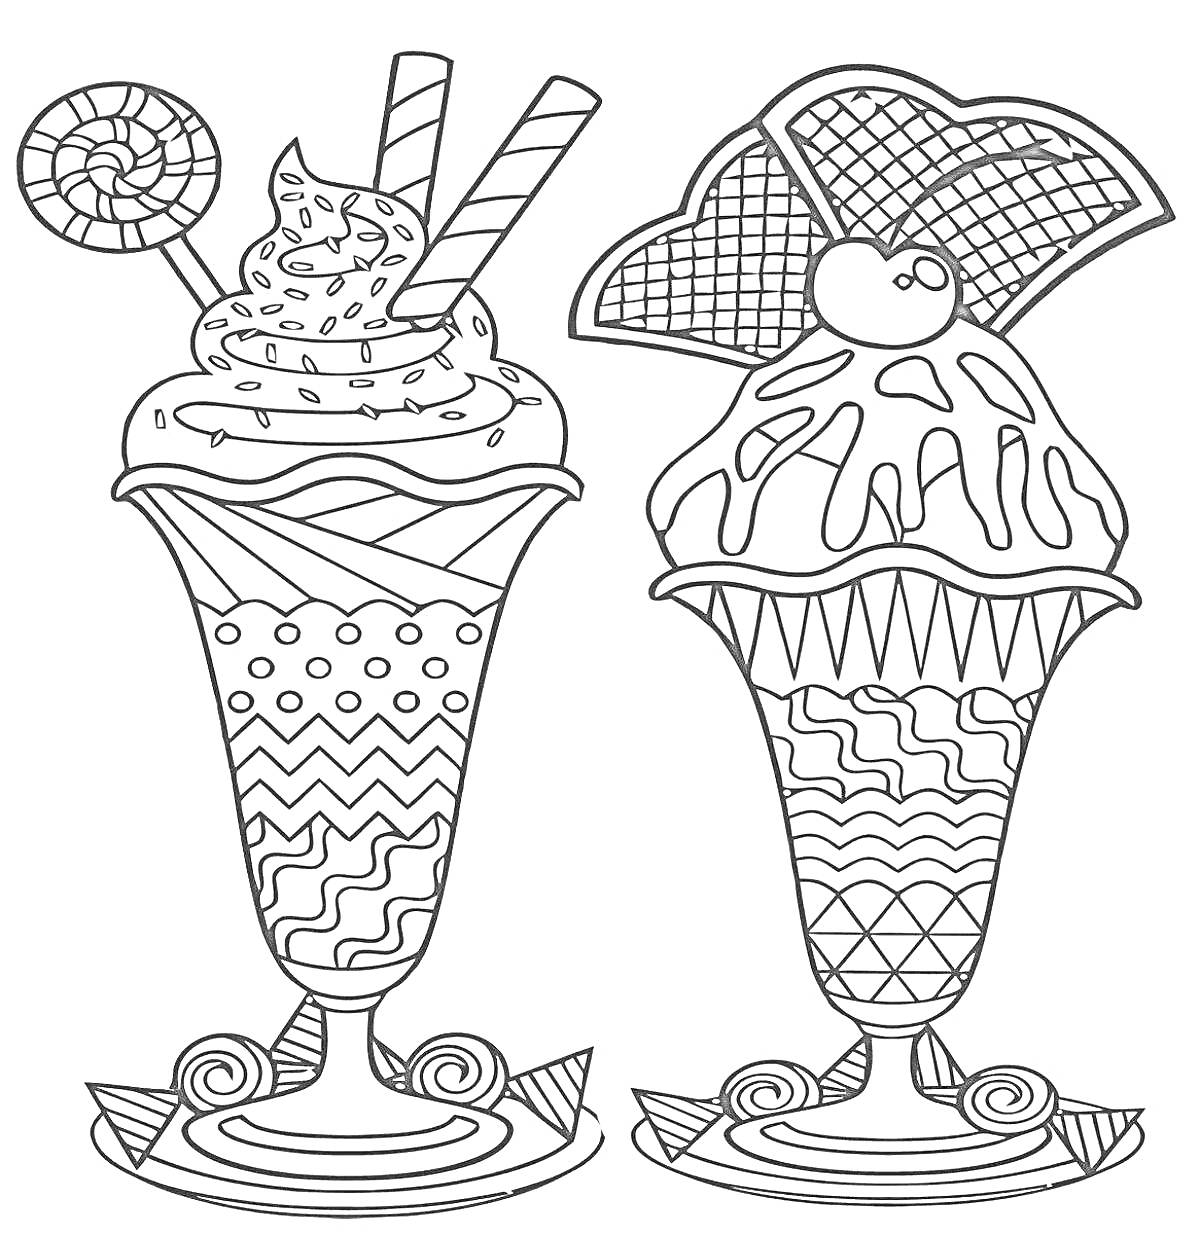 Раскраска Два мороженых в стаканах с узорами, украшенные конфетами, трубочками и вафельными печеньями